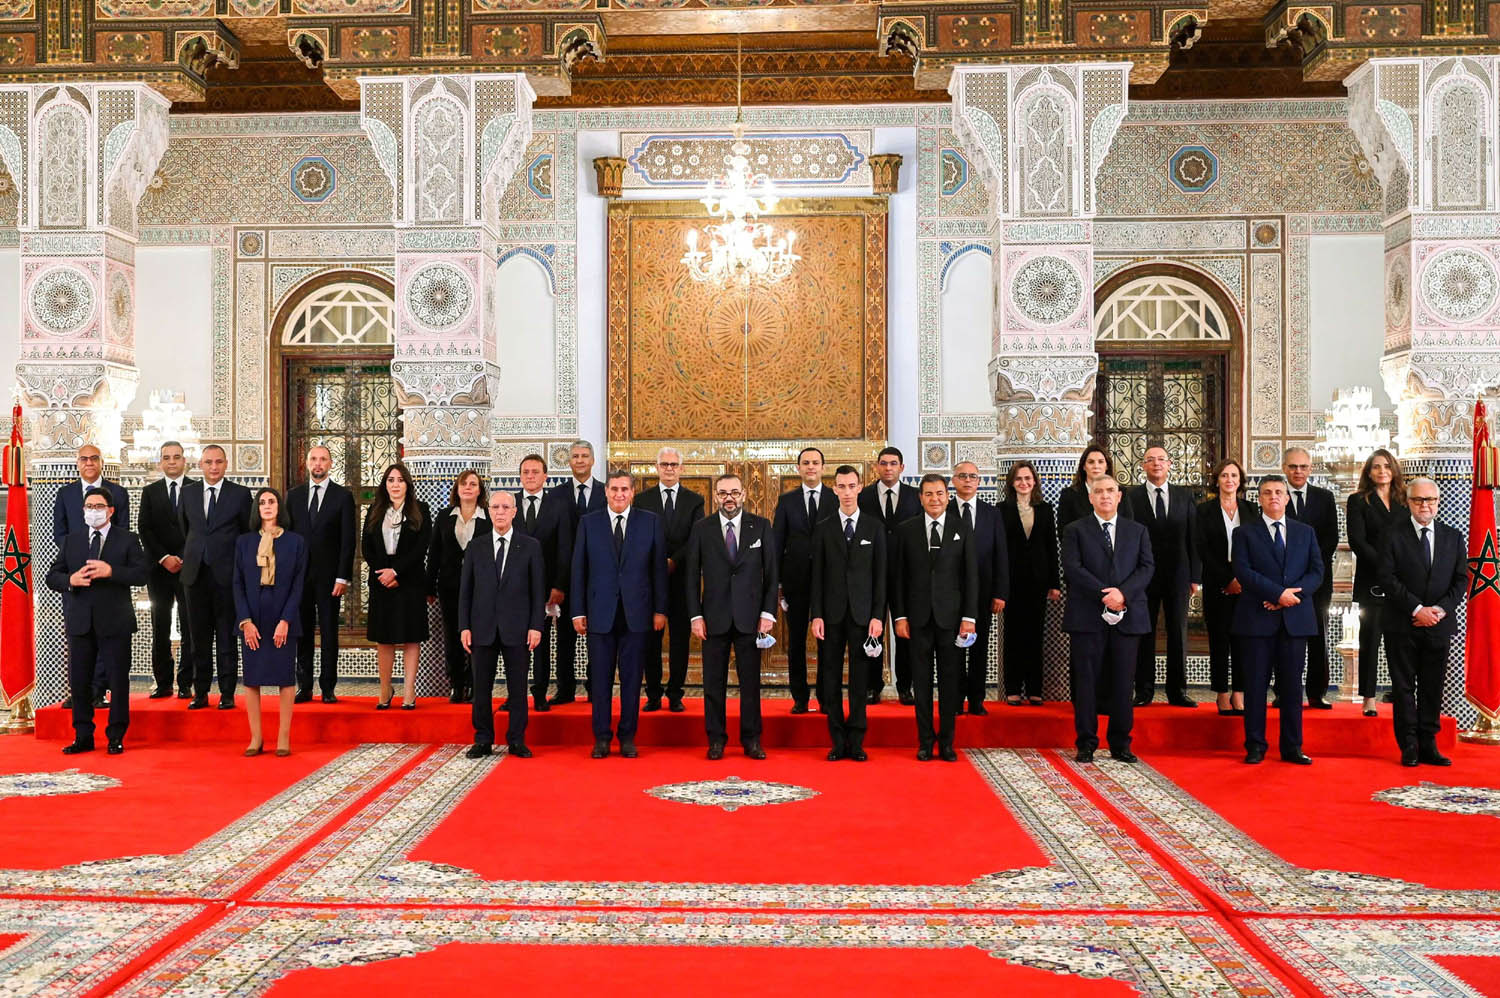 العاهل المغربي محمد السادس في صورة مع الحكومة الجديدة